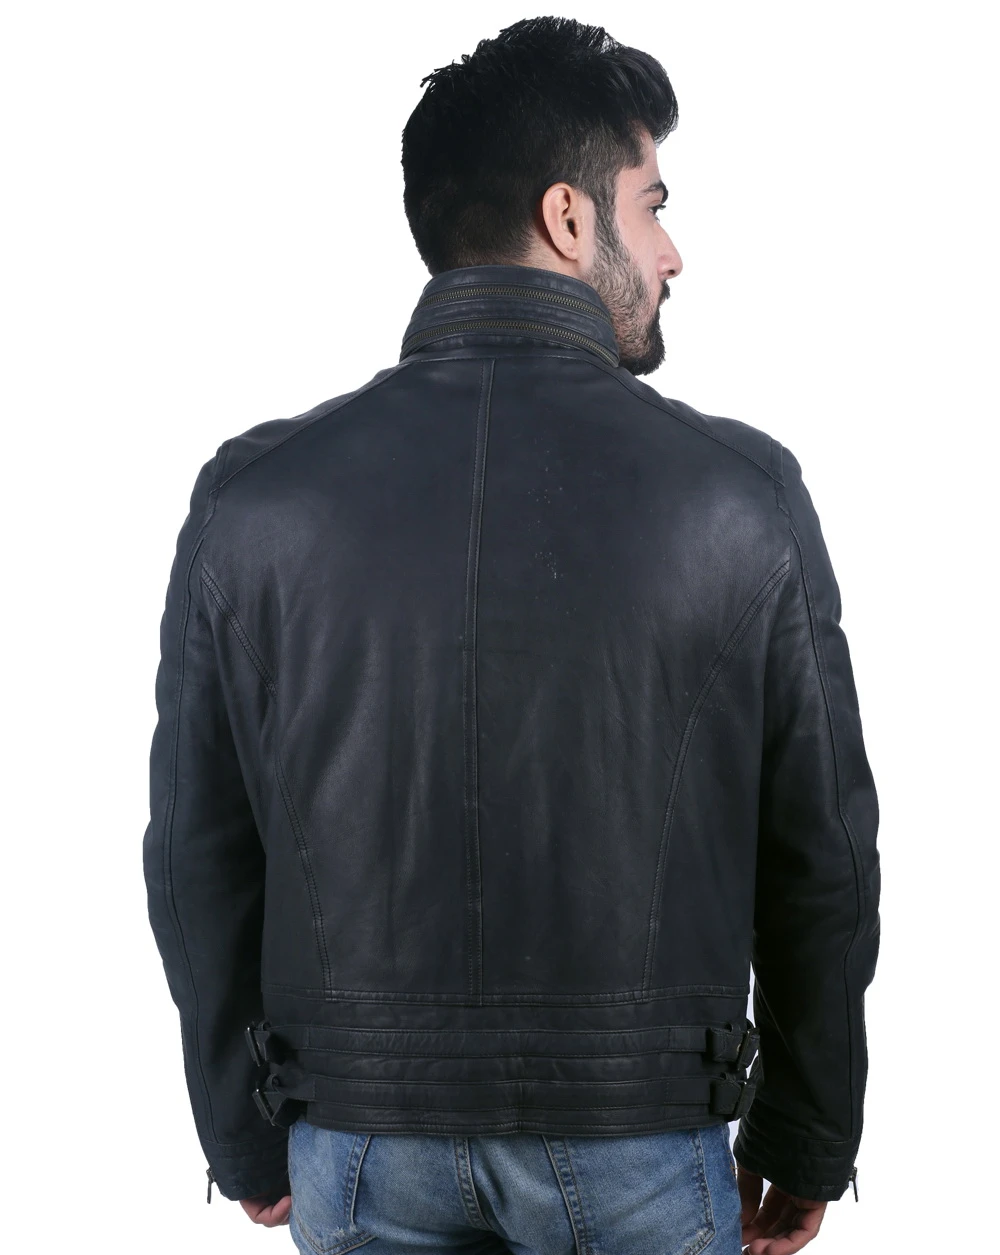 Wide neck black leather biker jacket for men